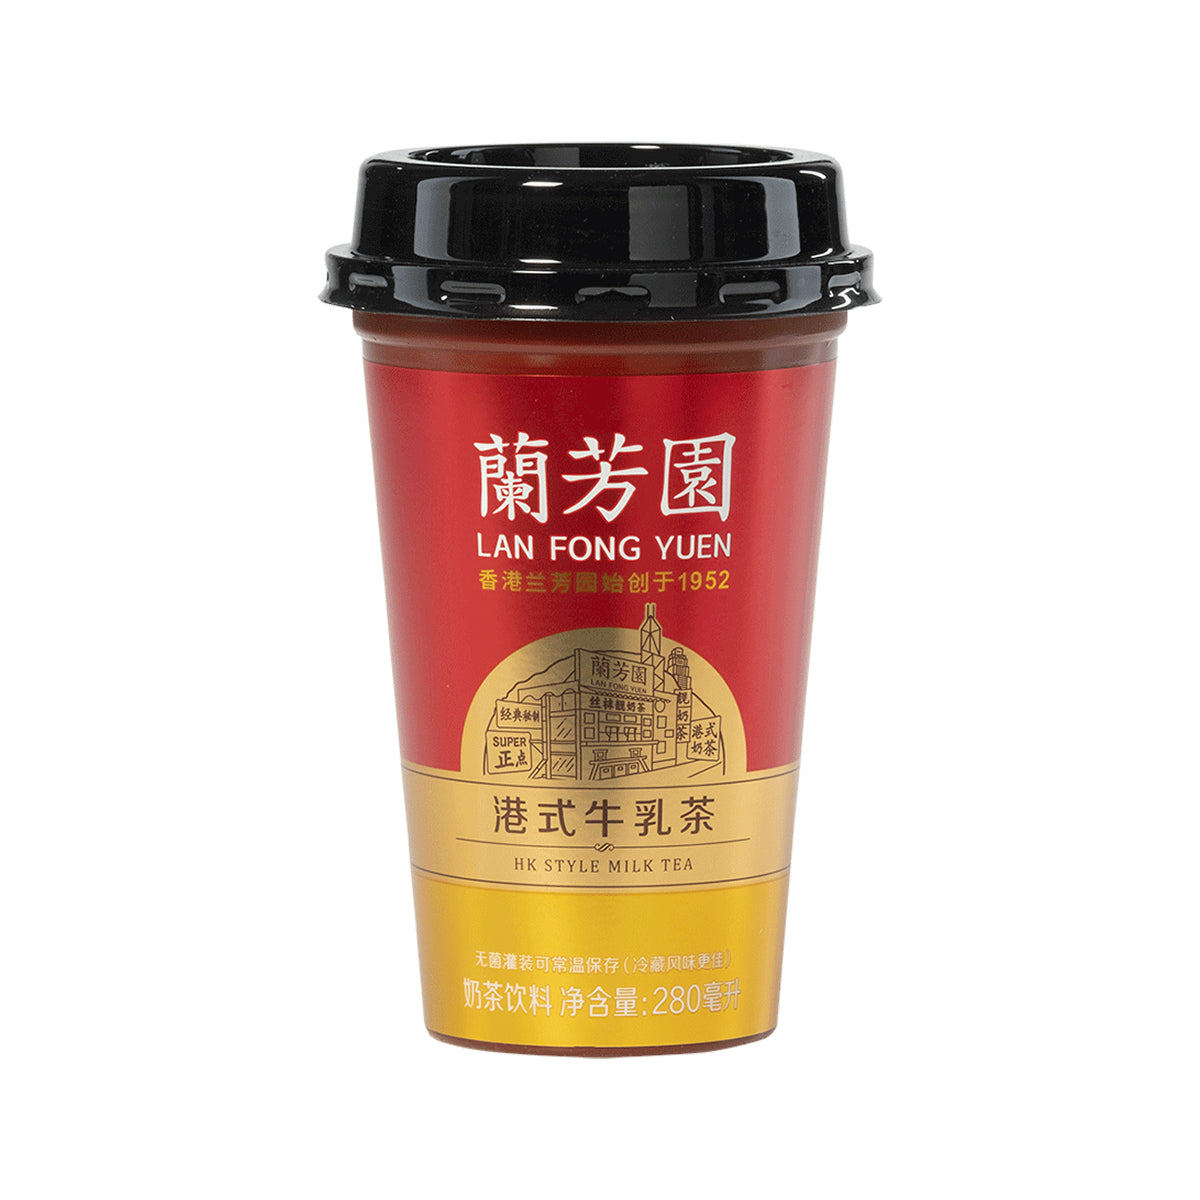 lan fong yuen hk style milk tea - 280ml